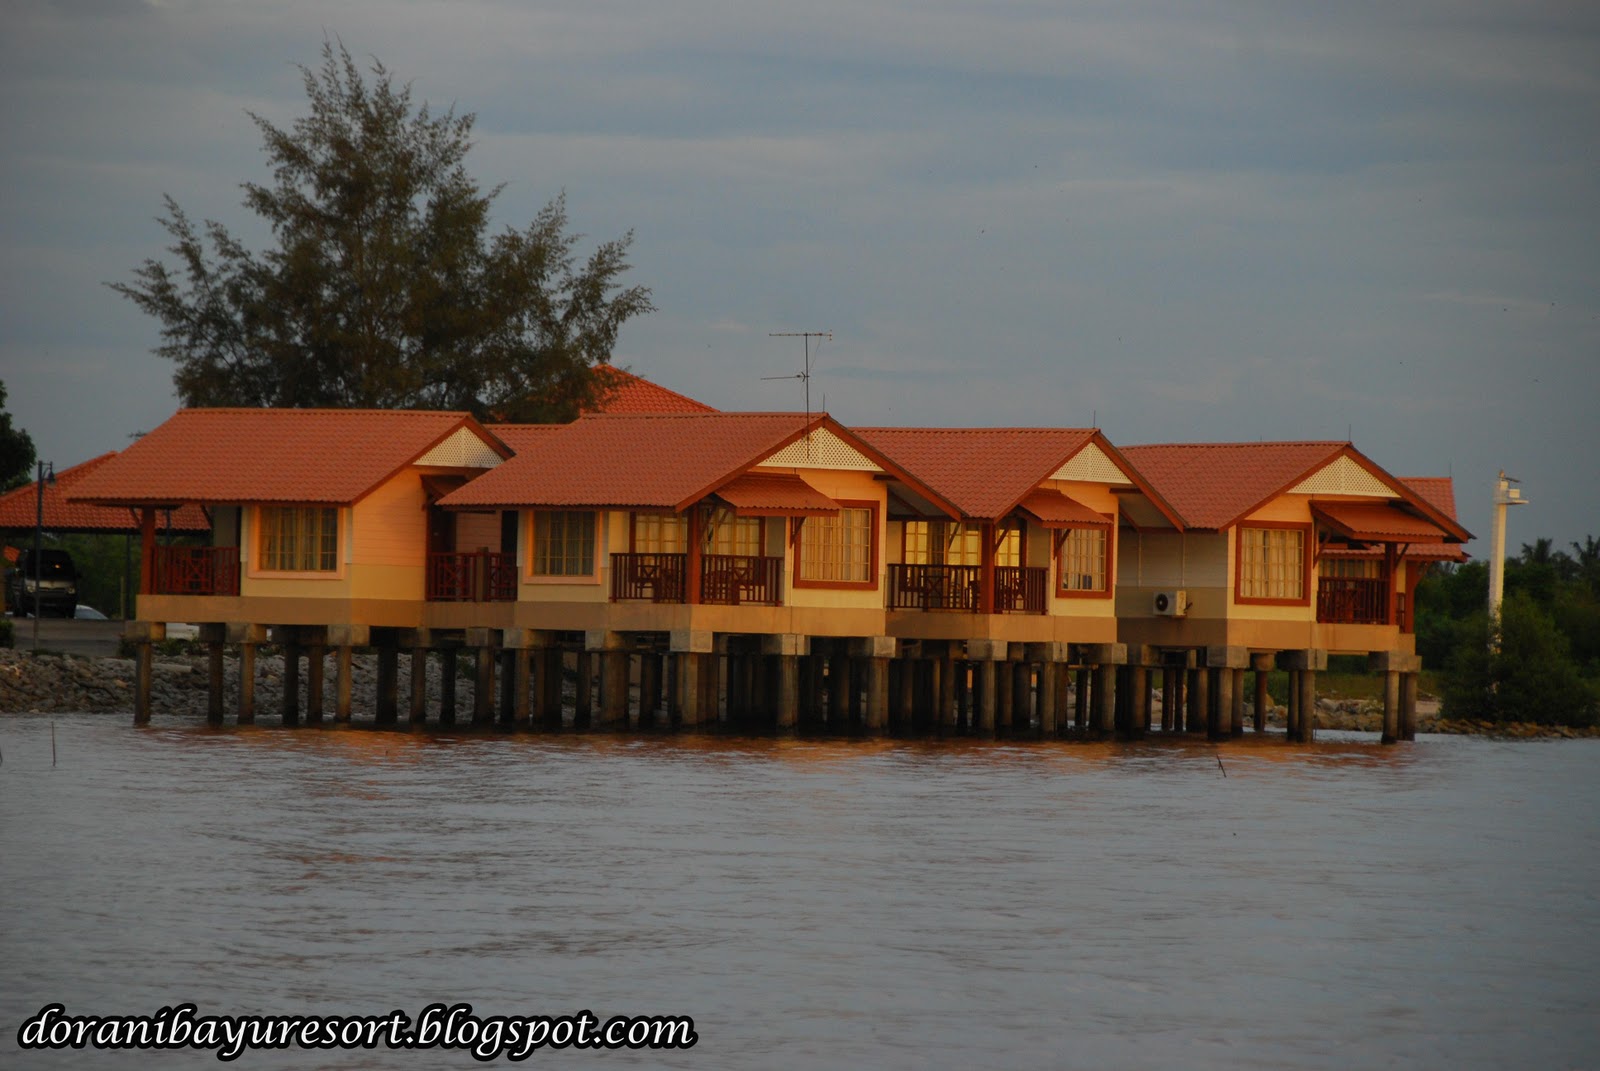 Dorani Bayu Resort: Lokasi Percutian